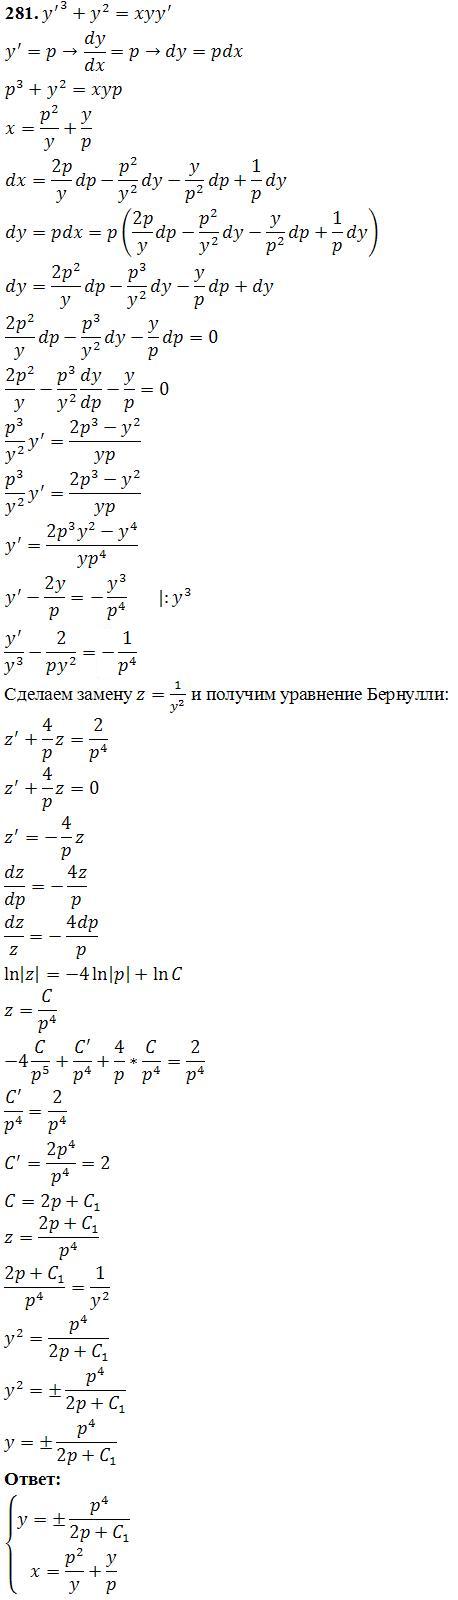 Уравнения, не разрешенные относительно производной - решение задачи 281